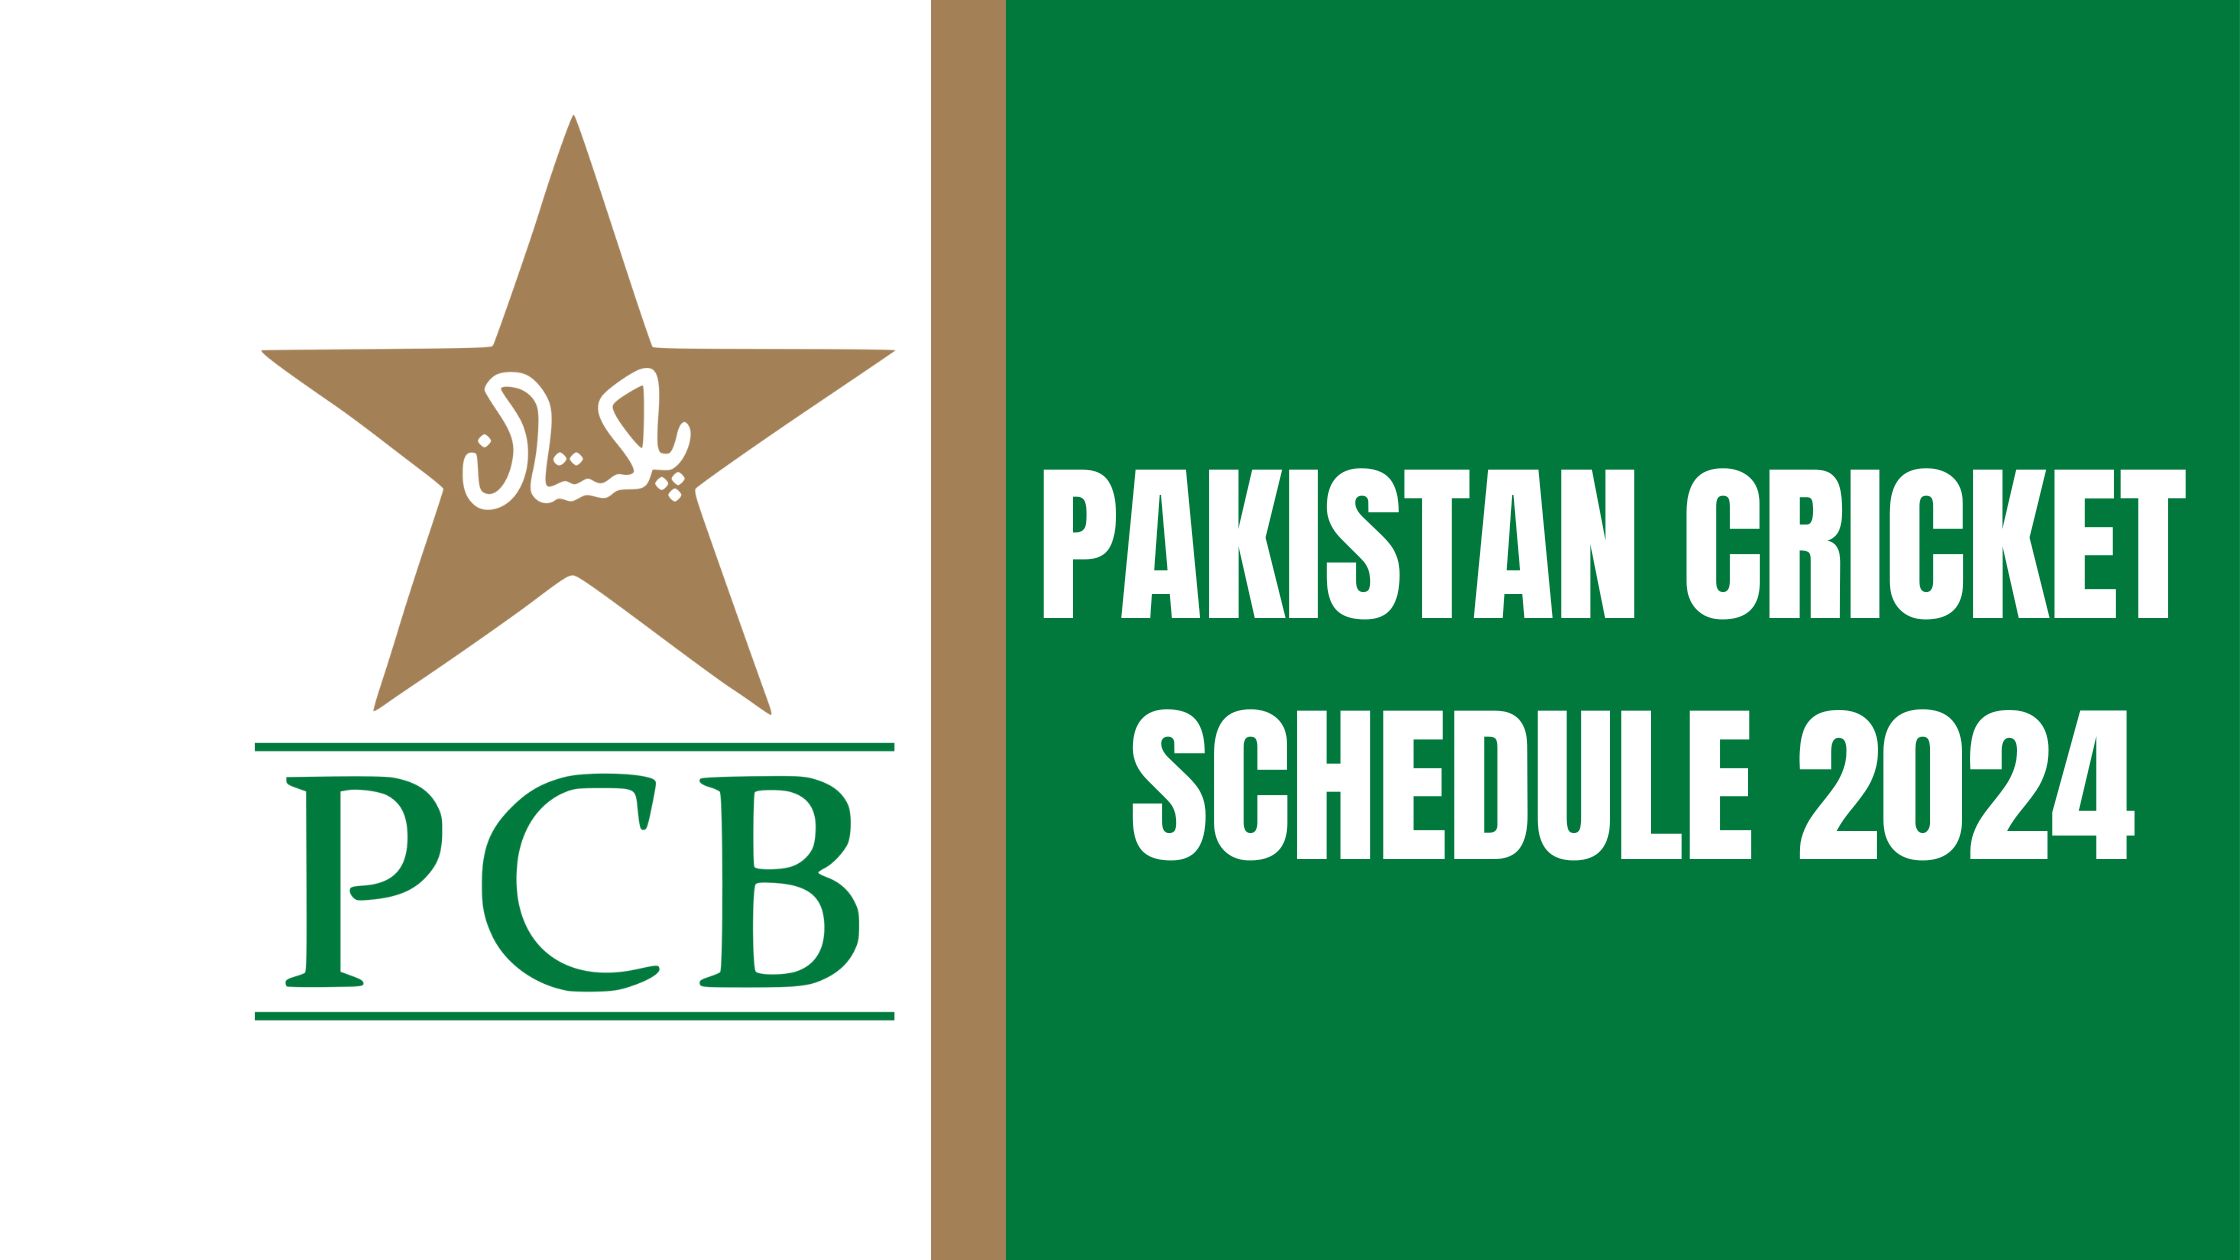 Pakistan Cricket Schedule 2024